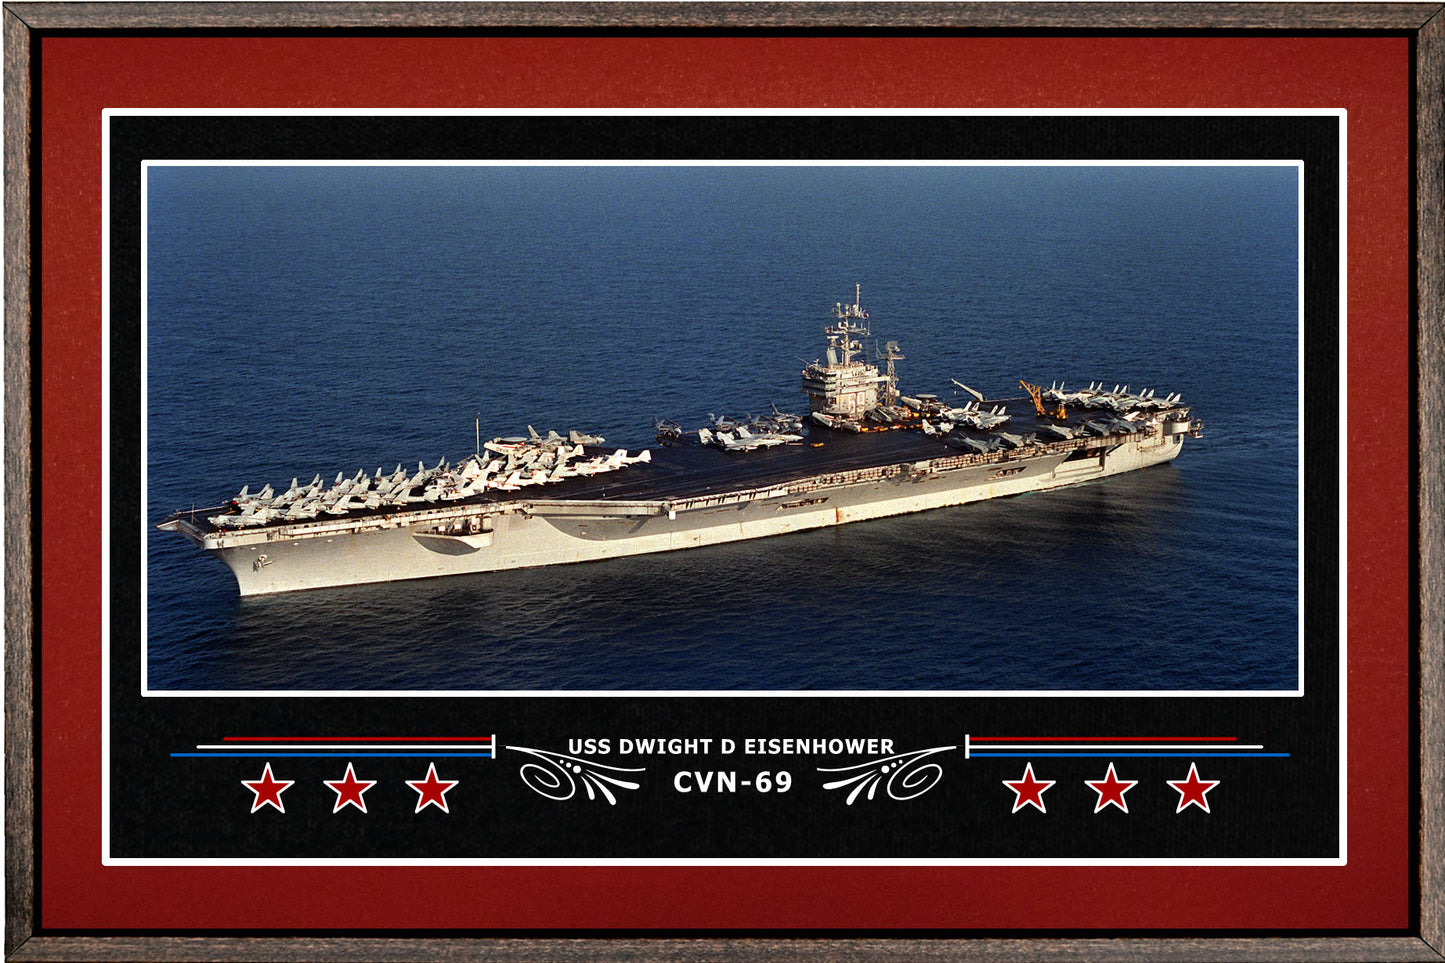 USS DWIGHT D EISENHOWER CVN 69 BOX FRAMED CANVAS ART BURGUNDY